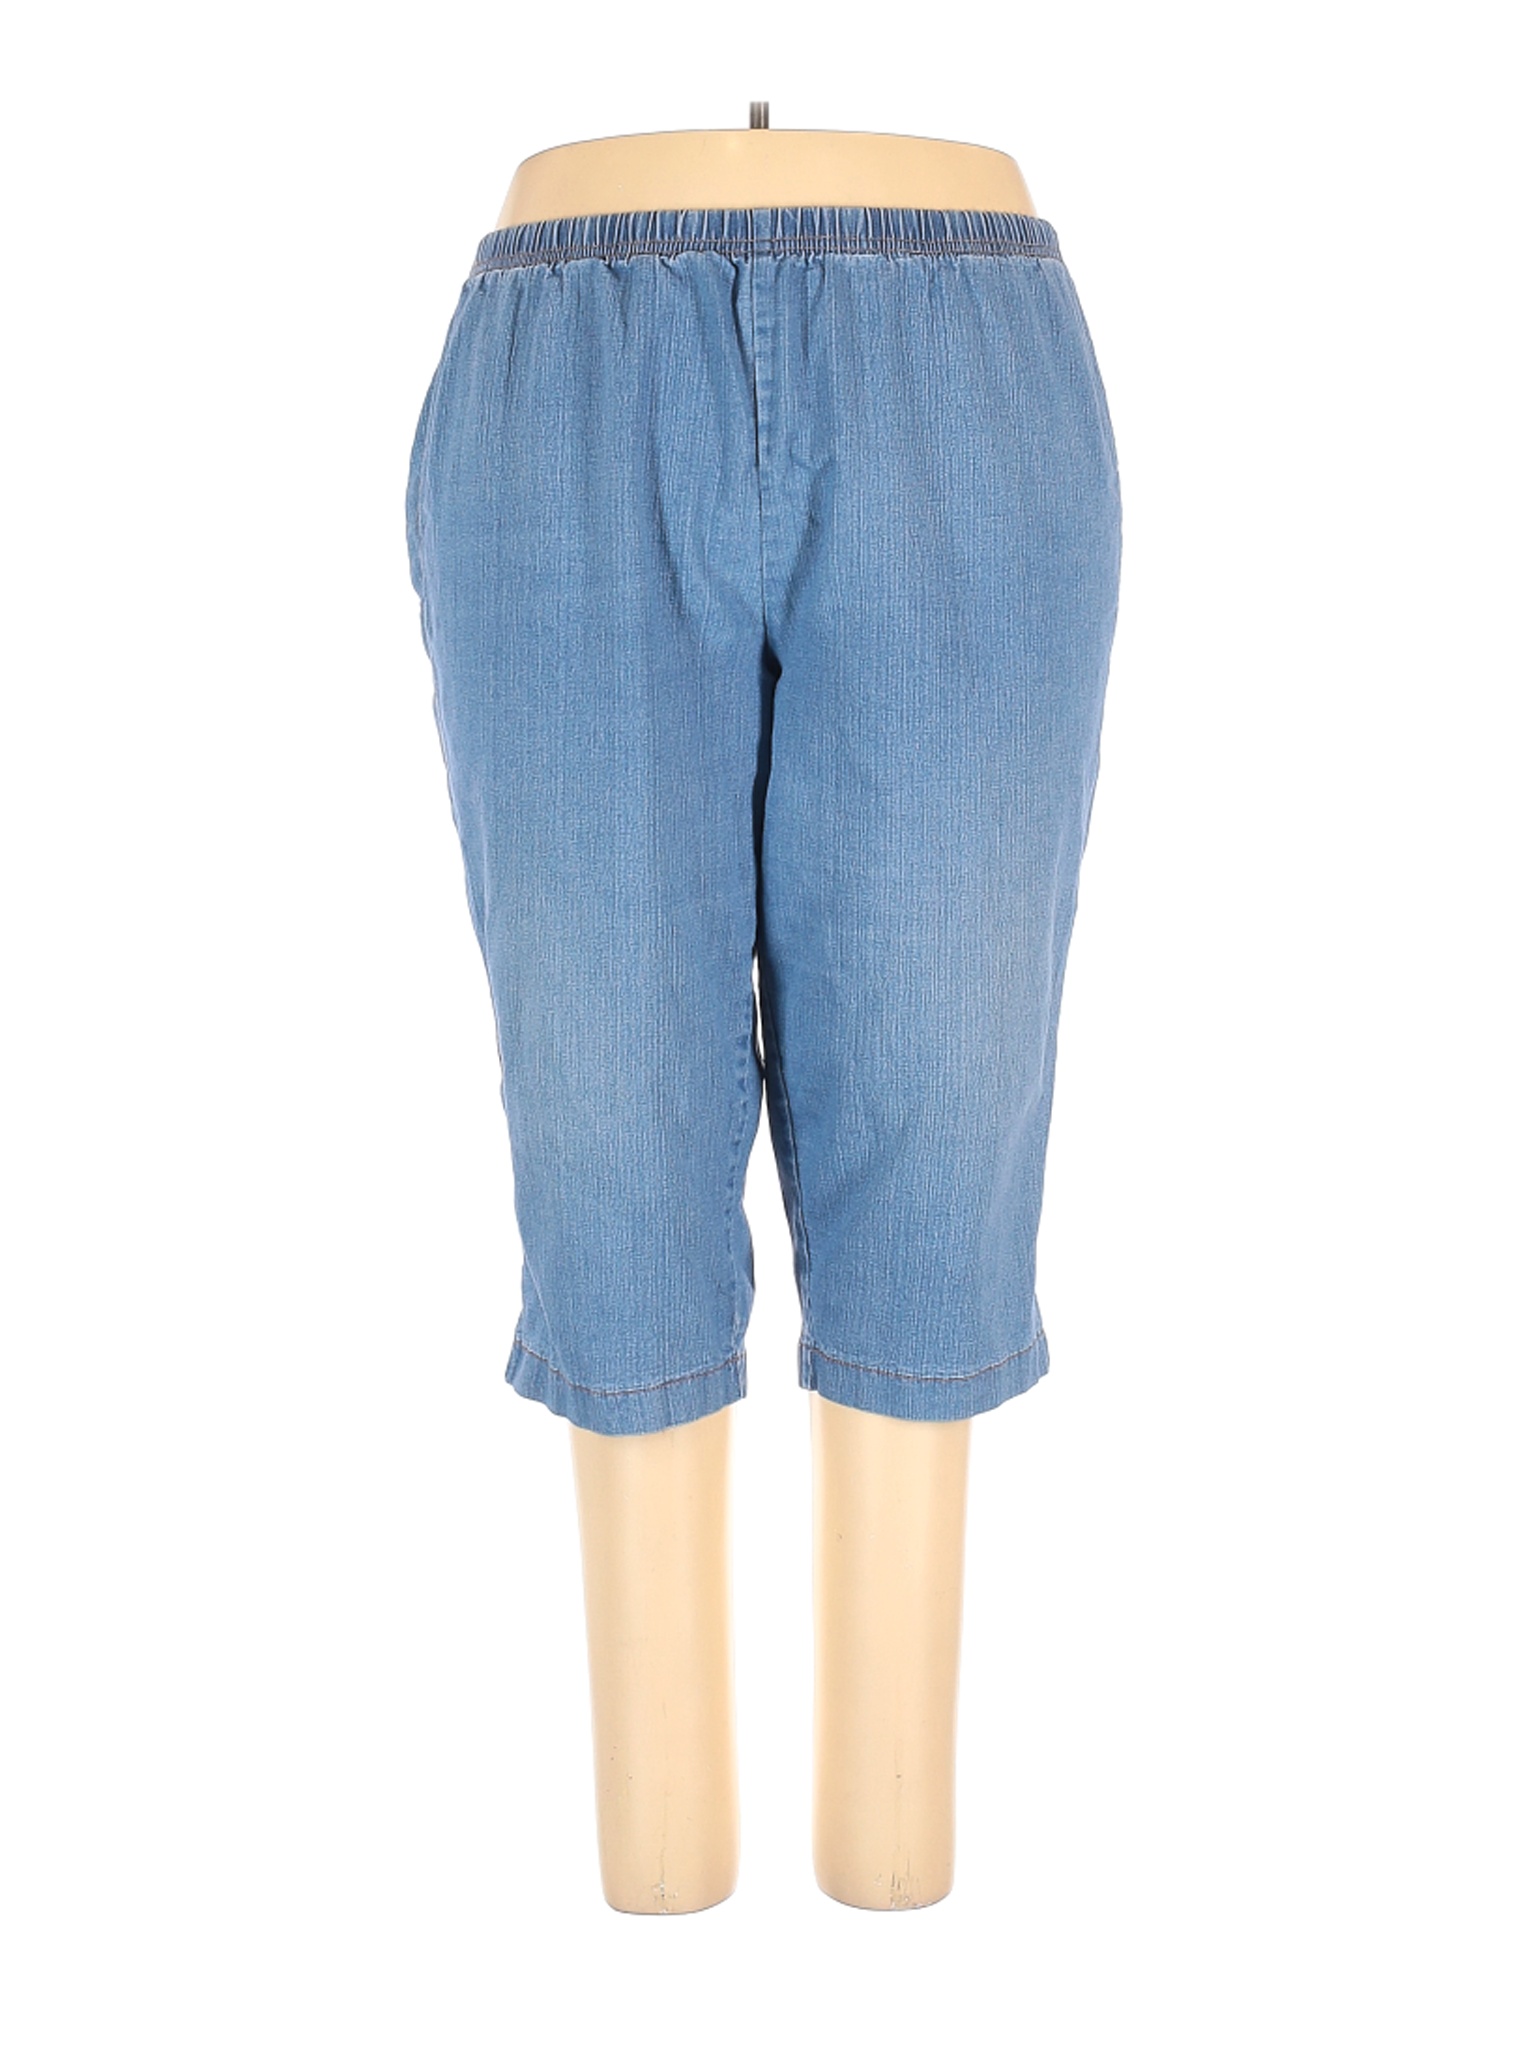 Just My Size Women Blue Jeans 4X Plus | eBay